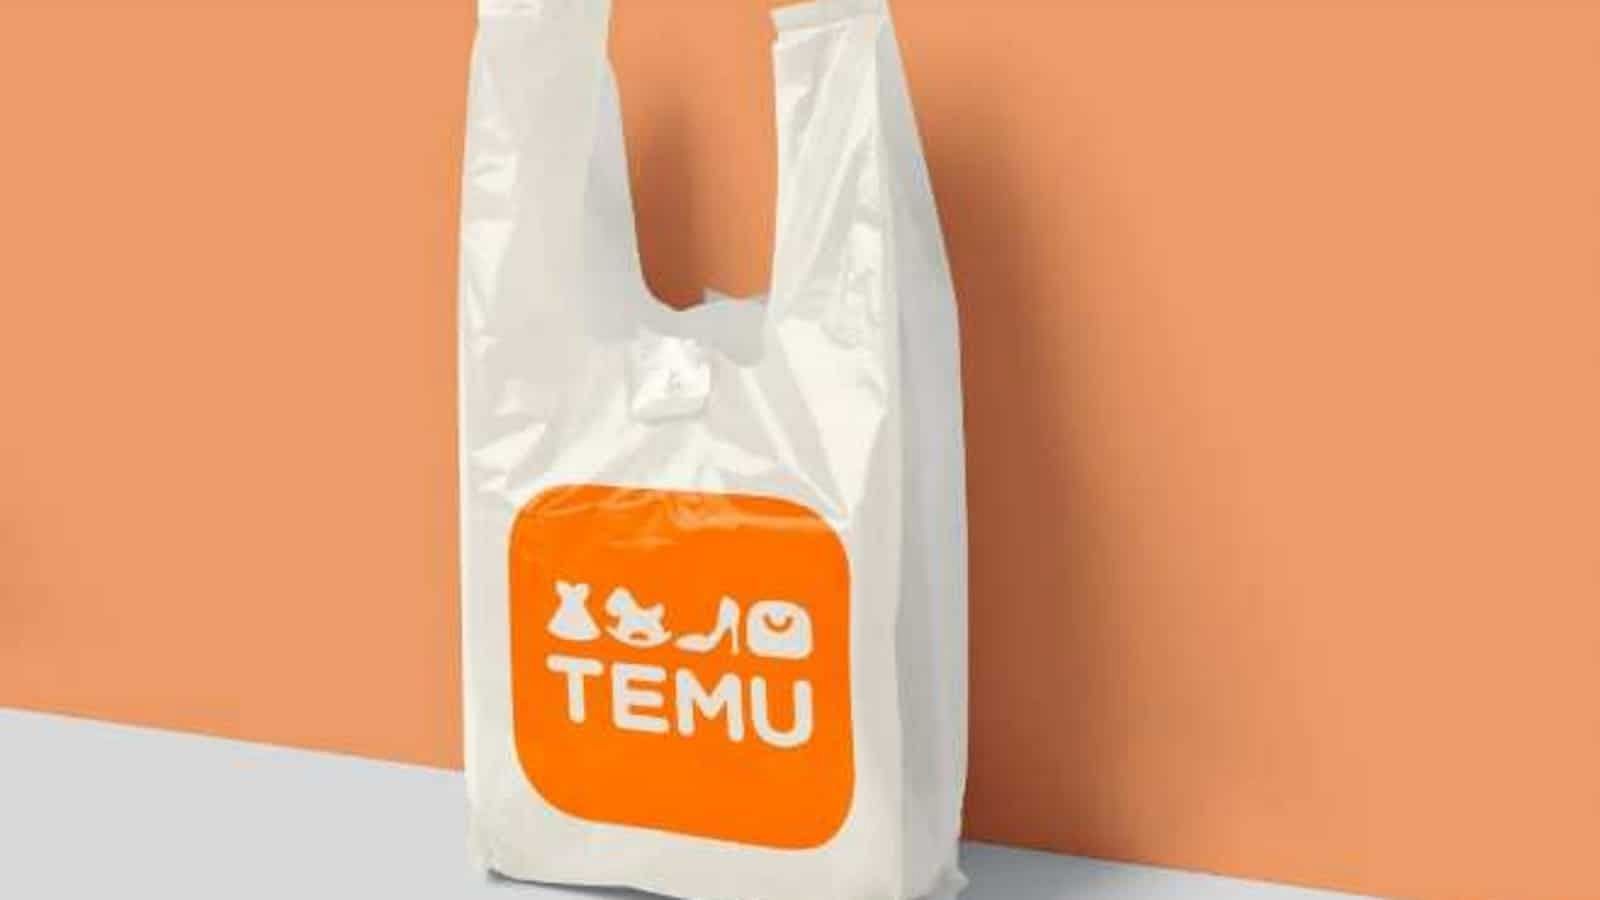 Temu (marketplace) - Wikipedia